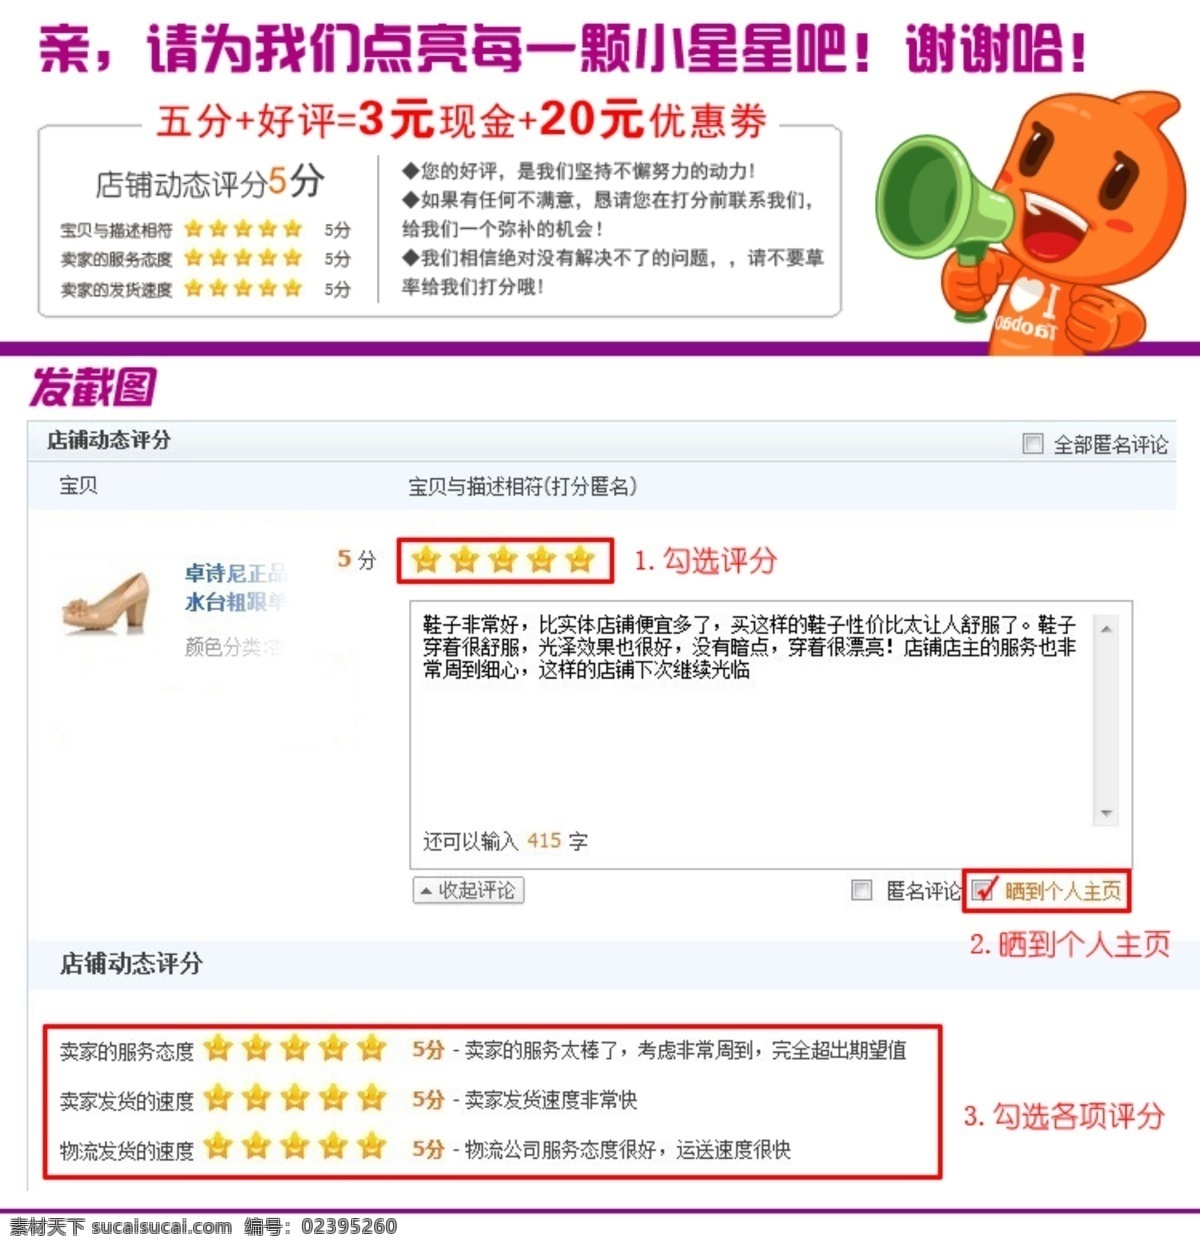 淘宝五星好评 淘宝5分好评 淘公仔 截图好评 中文模版 网页模板 源文件